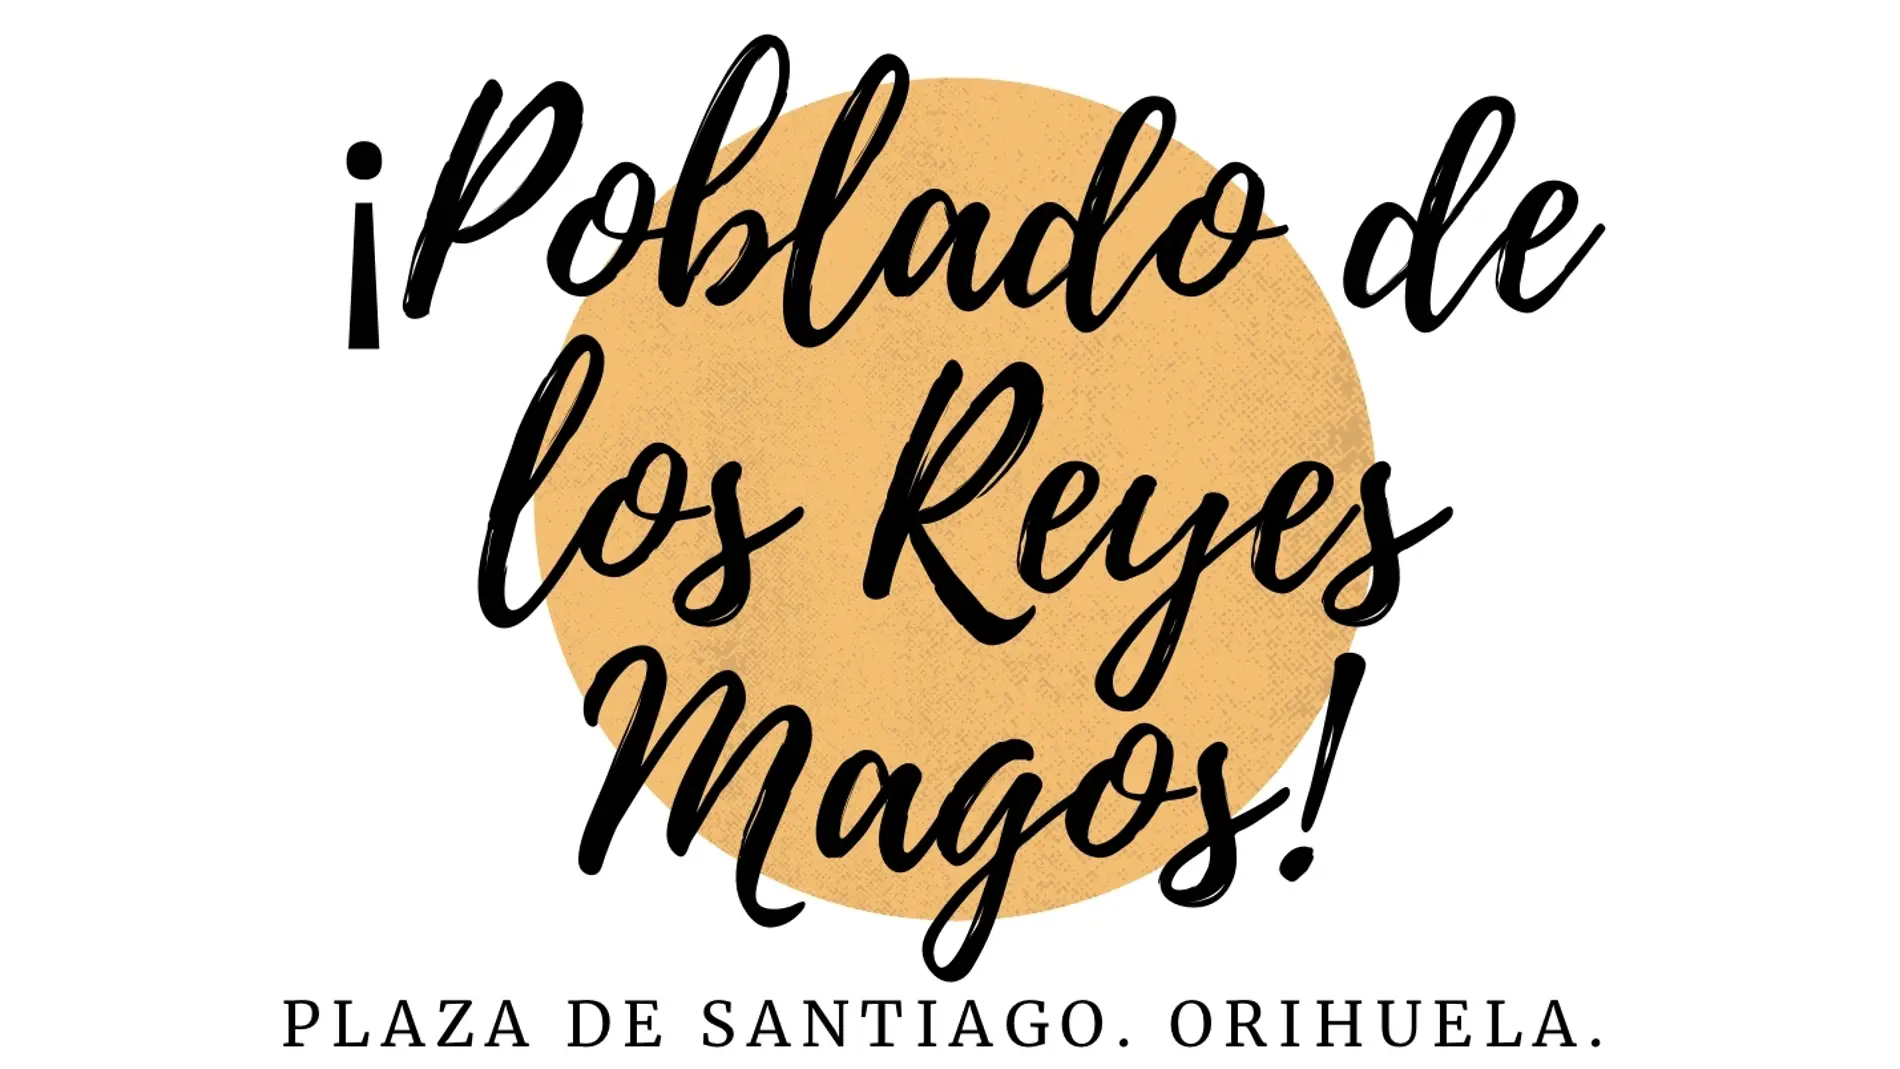 Los Reyes Magos han instalado su campamento en la plaza de Santiago, en Rabaloche de Orihuela 